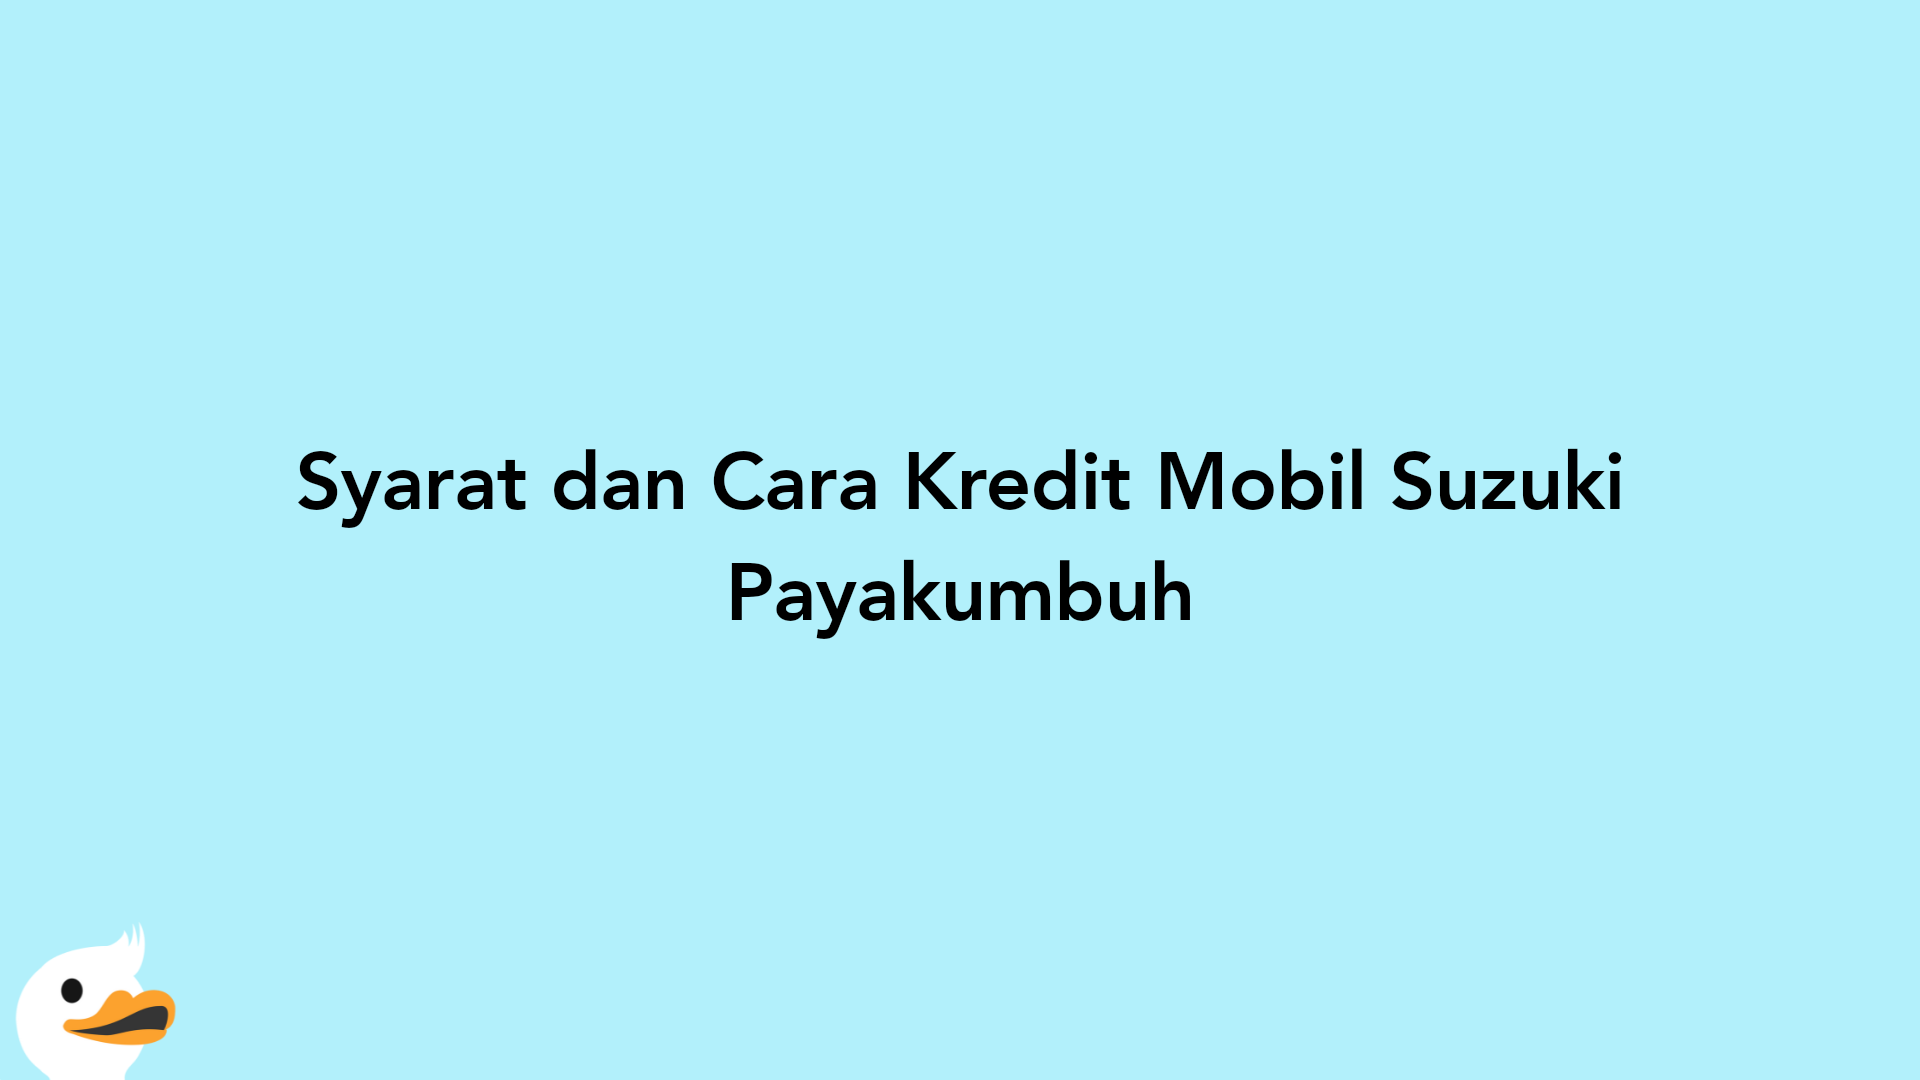 Syarat dan Cara Kredit Mobil Suzuki Payakumbuh